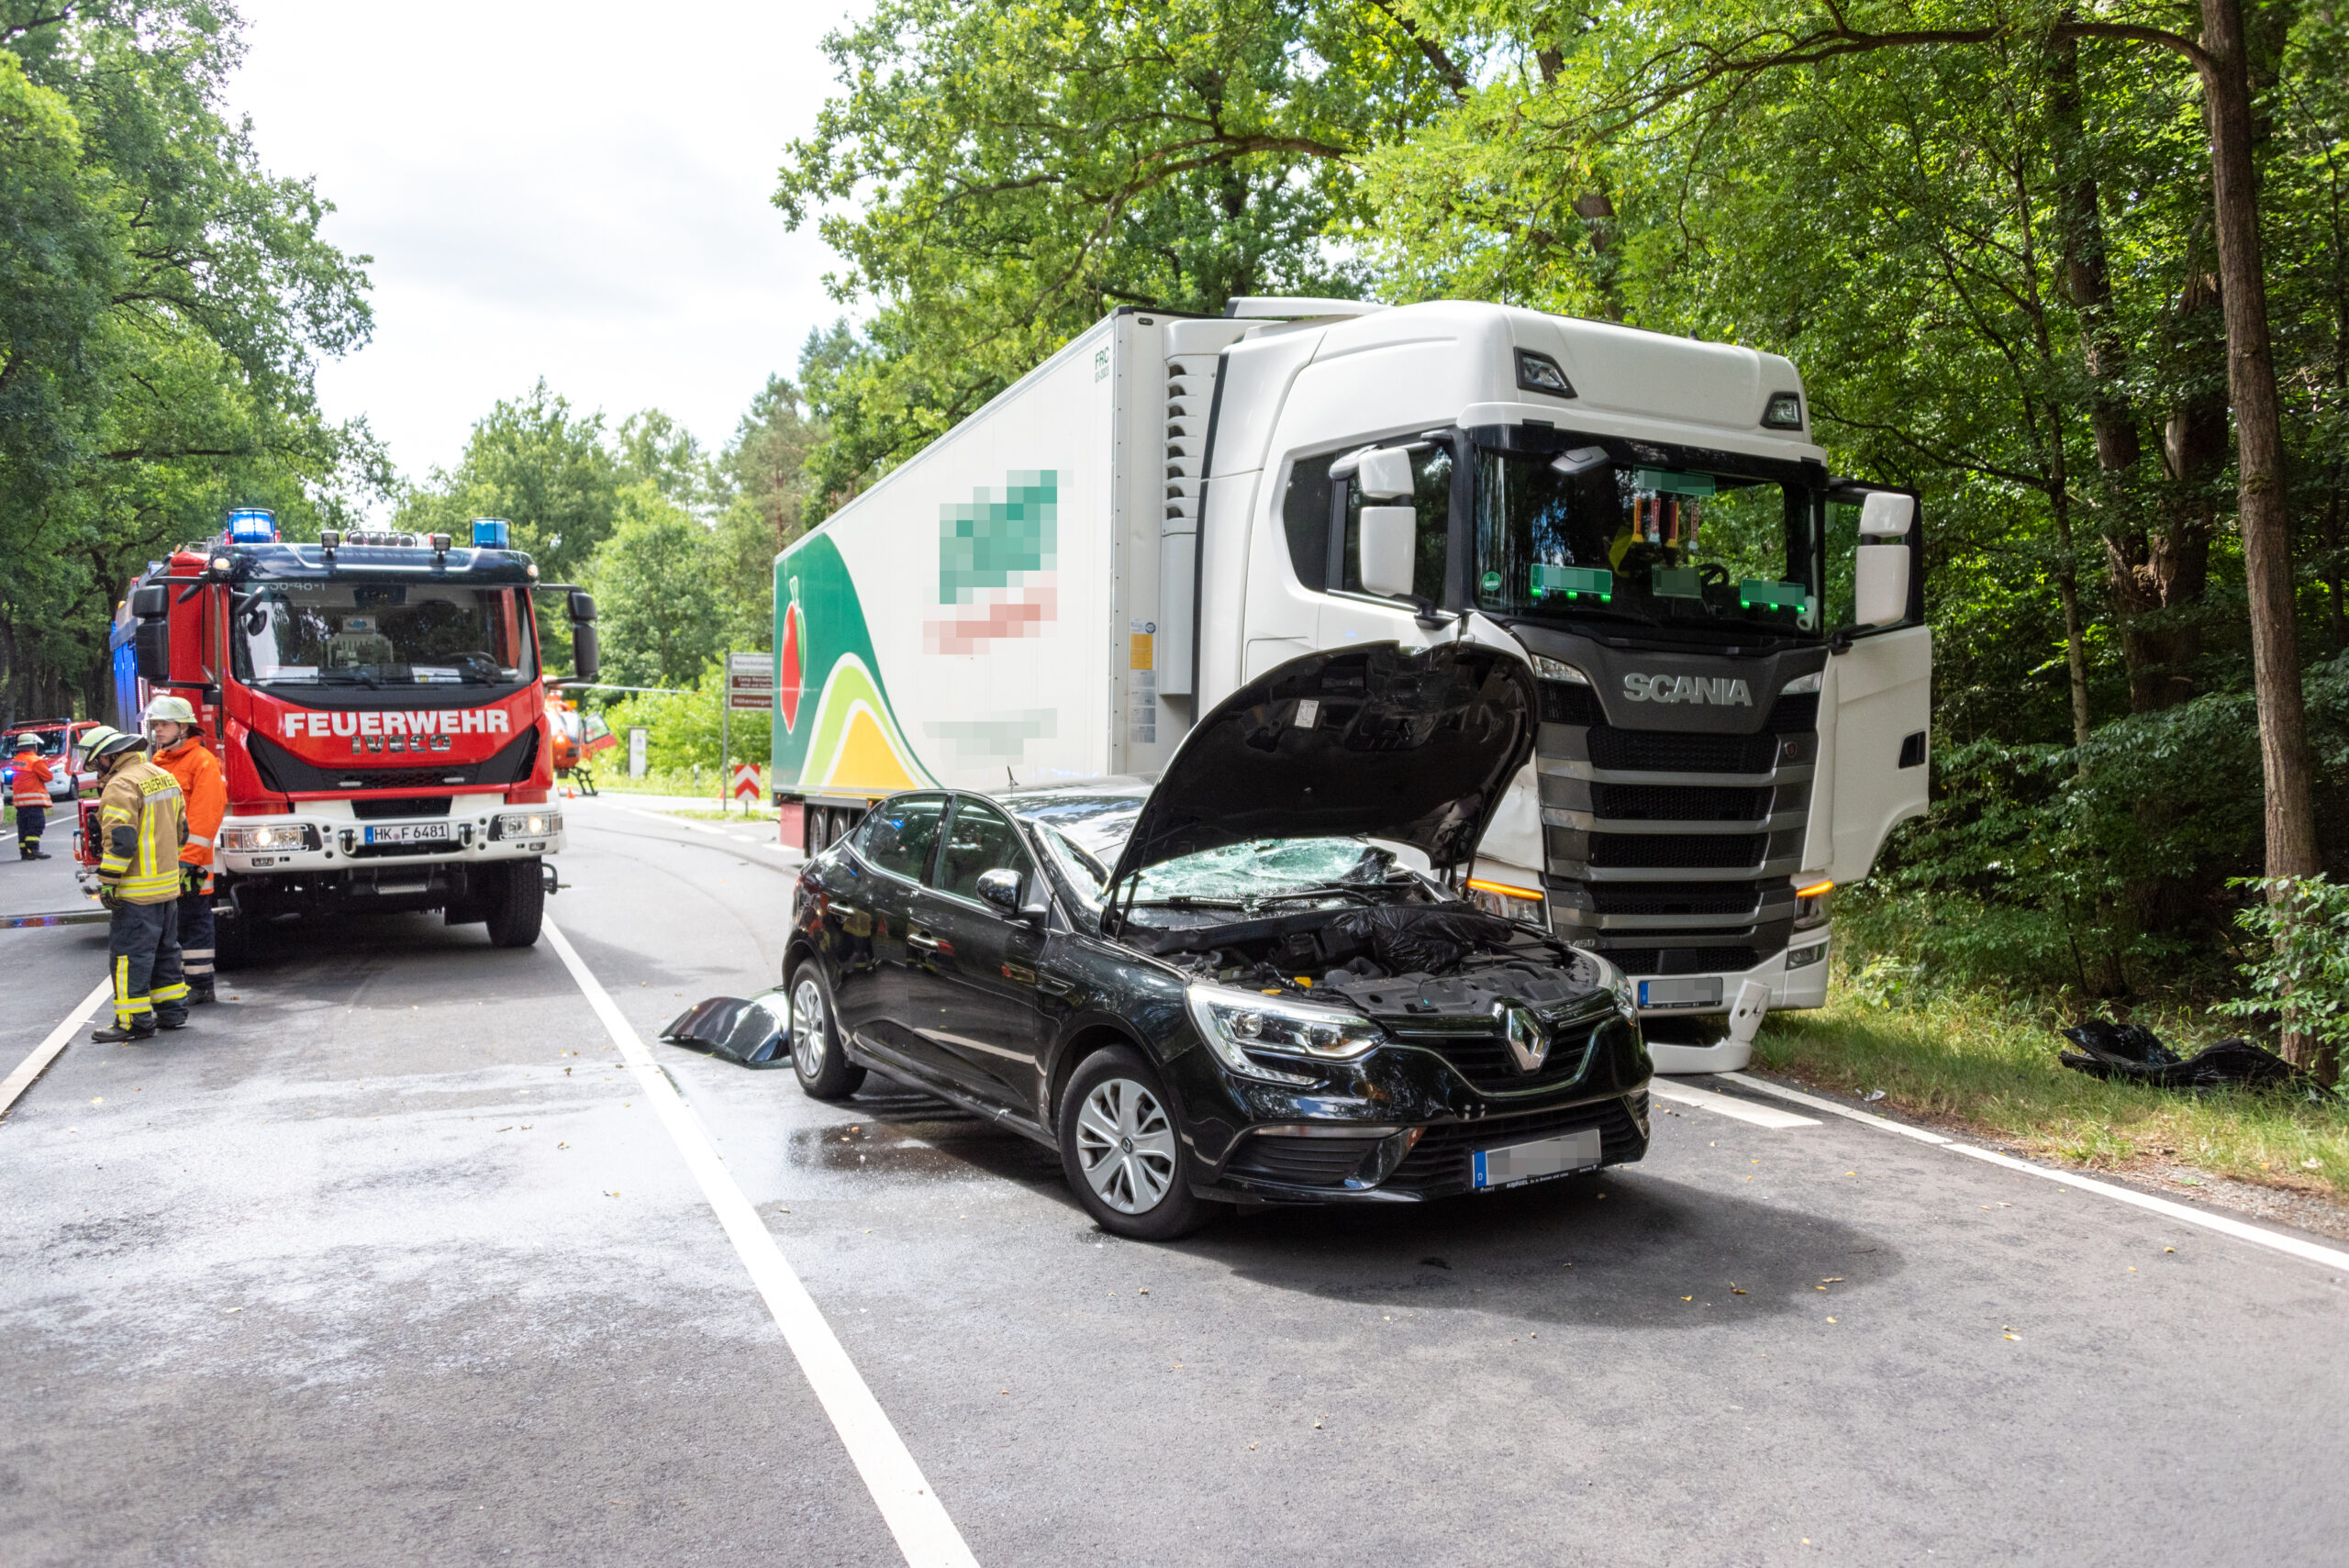 Der am Unfall beteiligte Renault. Zwei Menschen wurden bei dem Unfall verletzt.